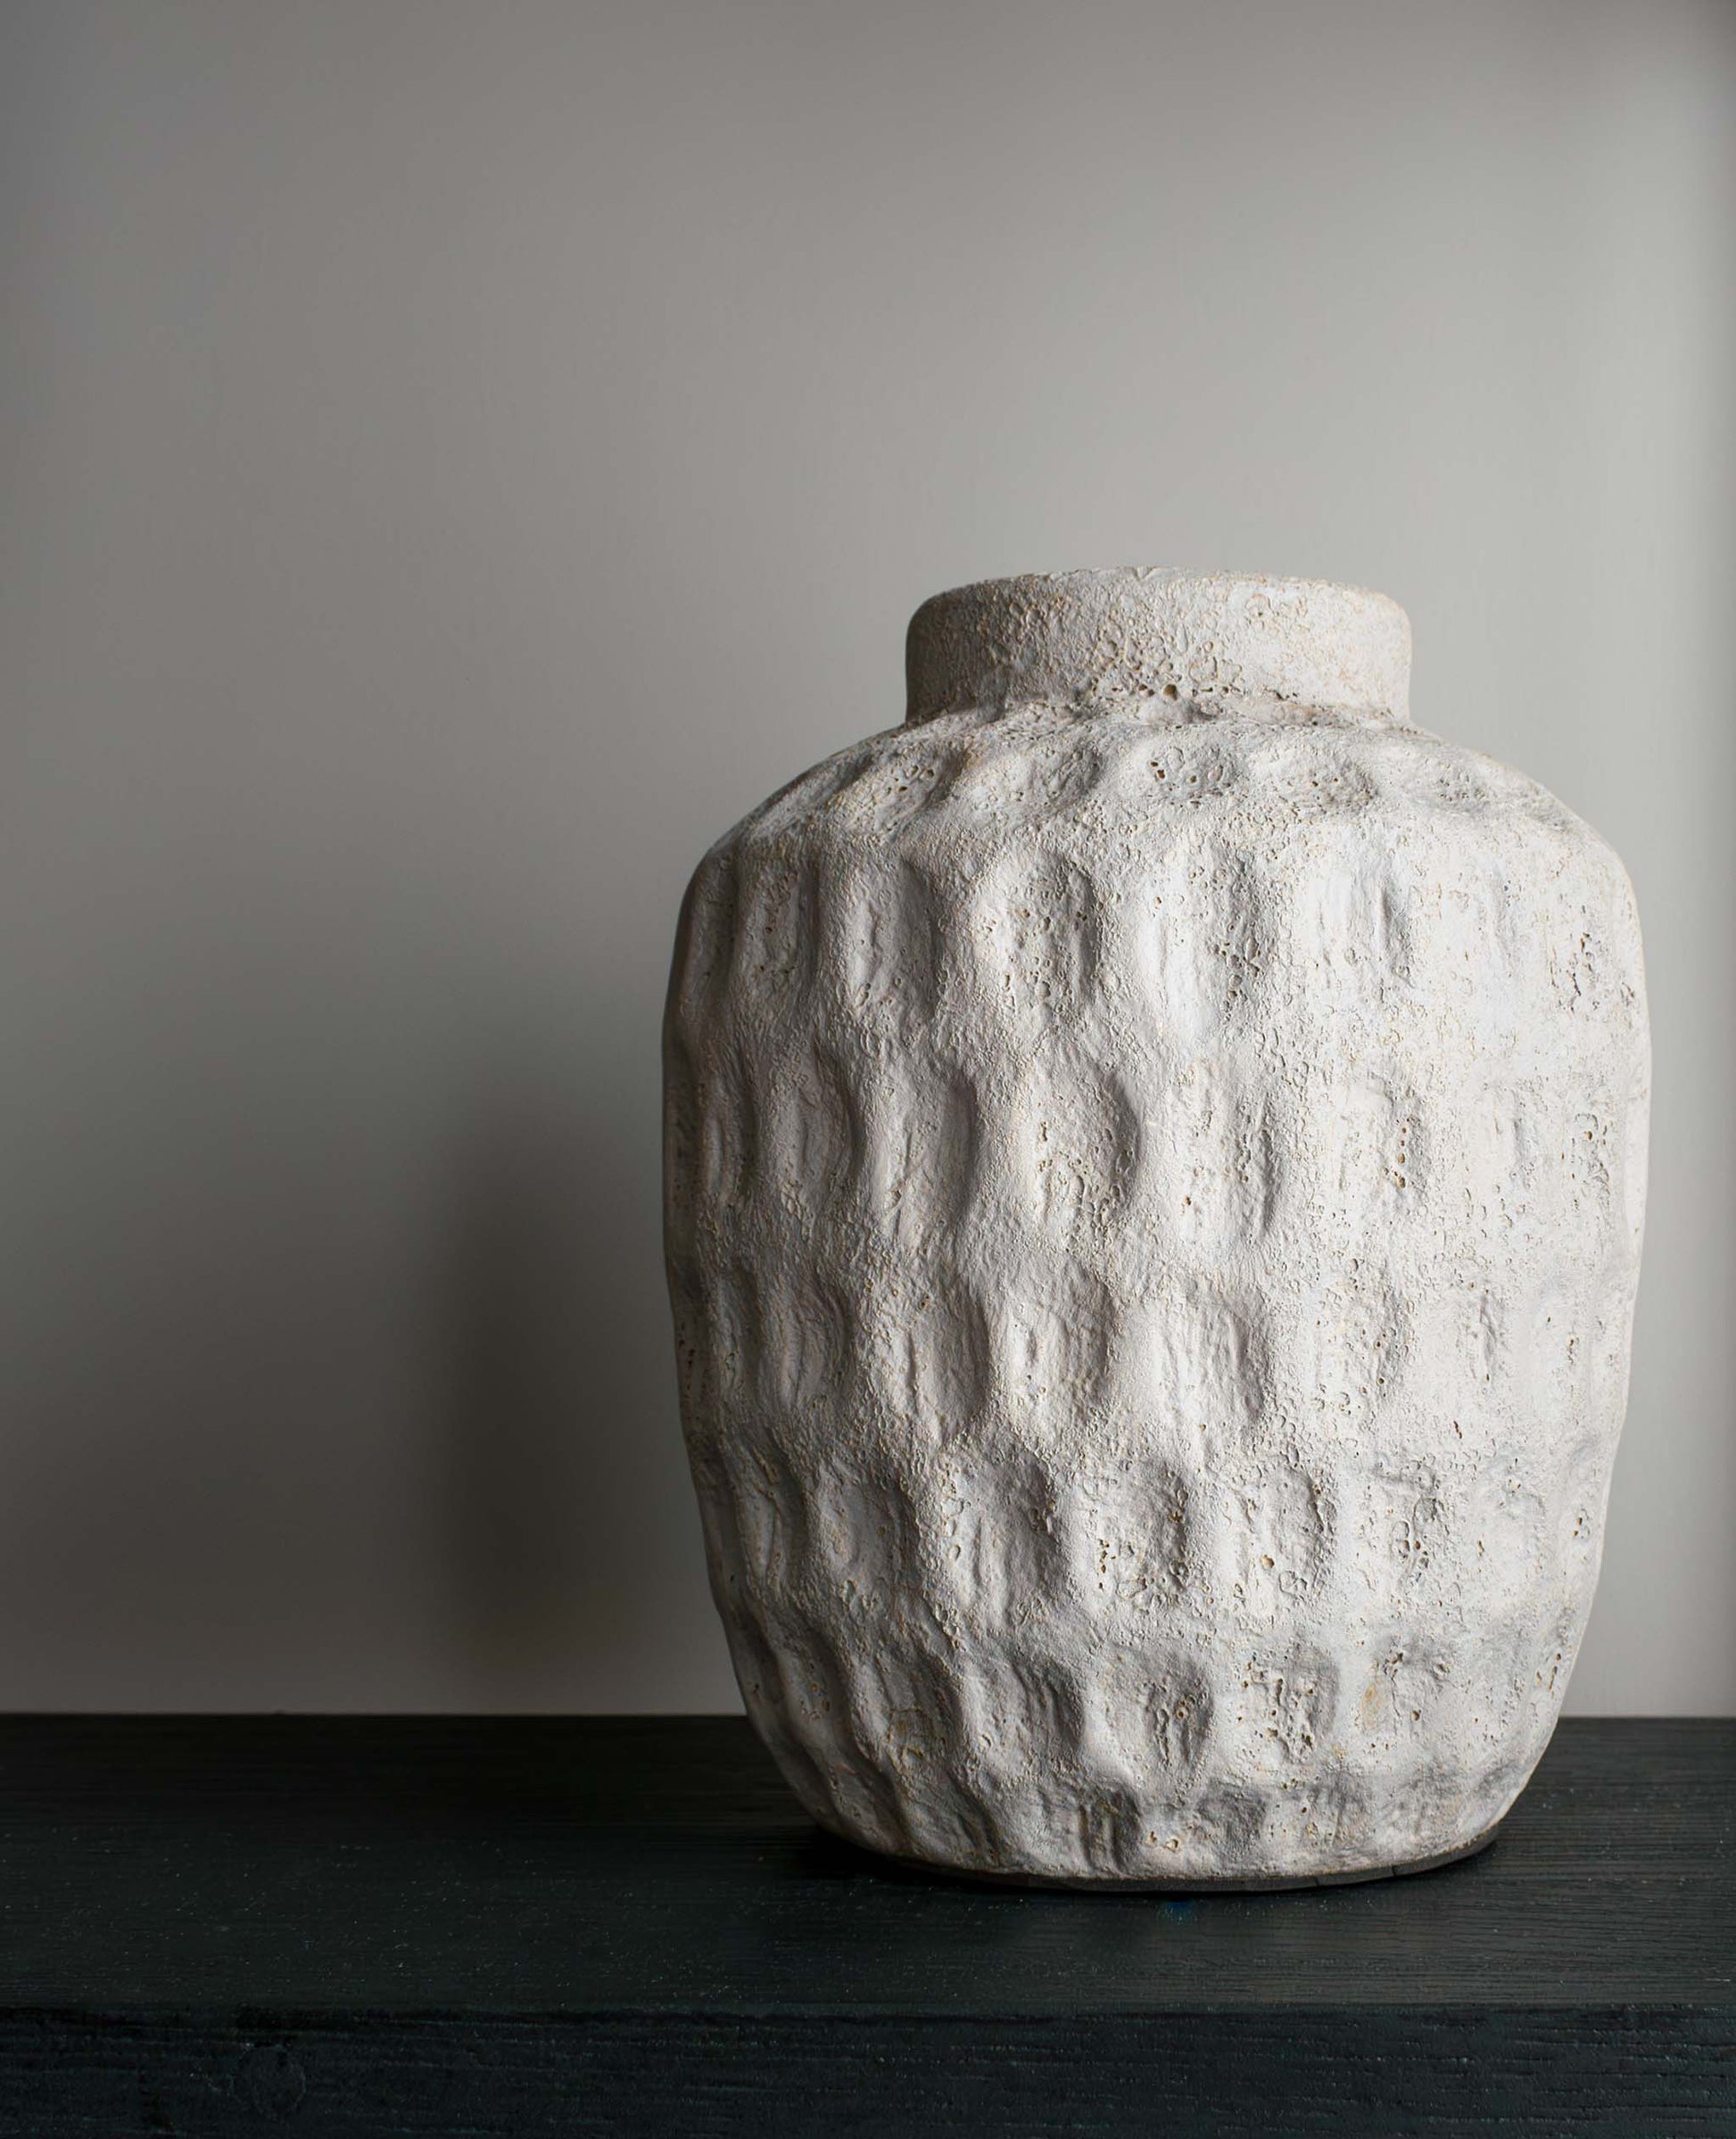 Concrete/cement decorative dimpled vase on black oak shelf.